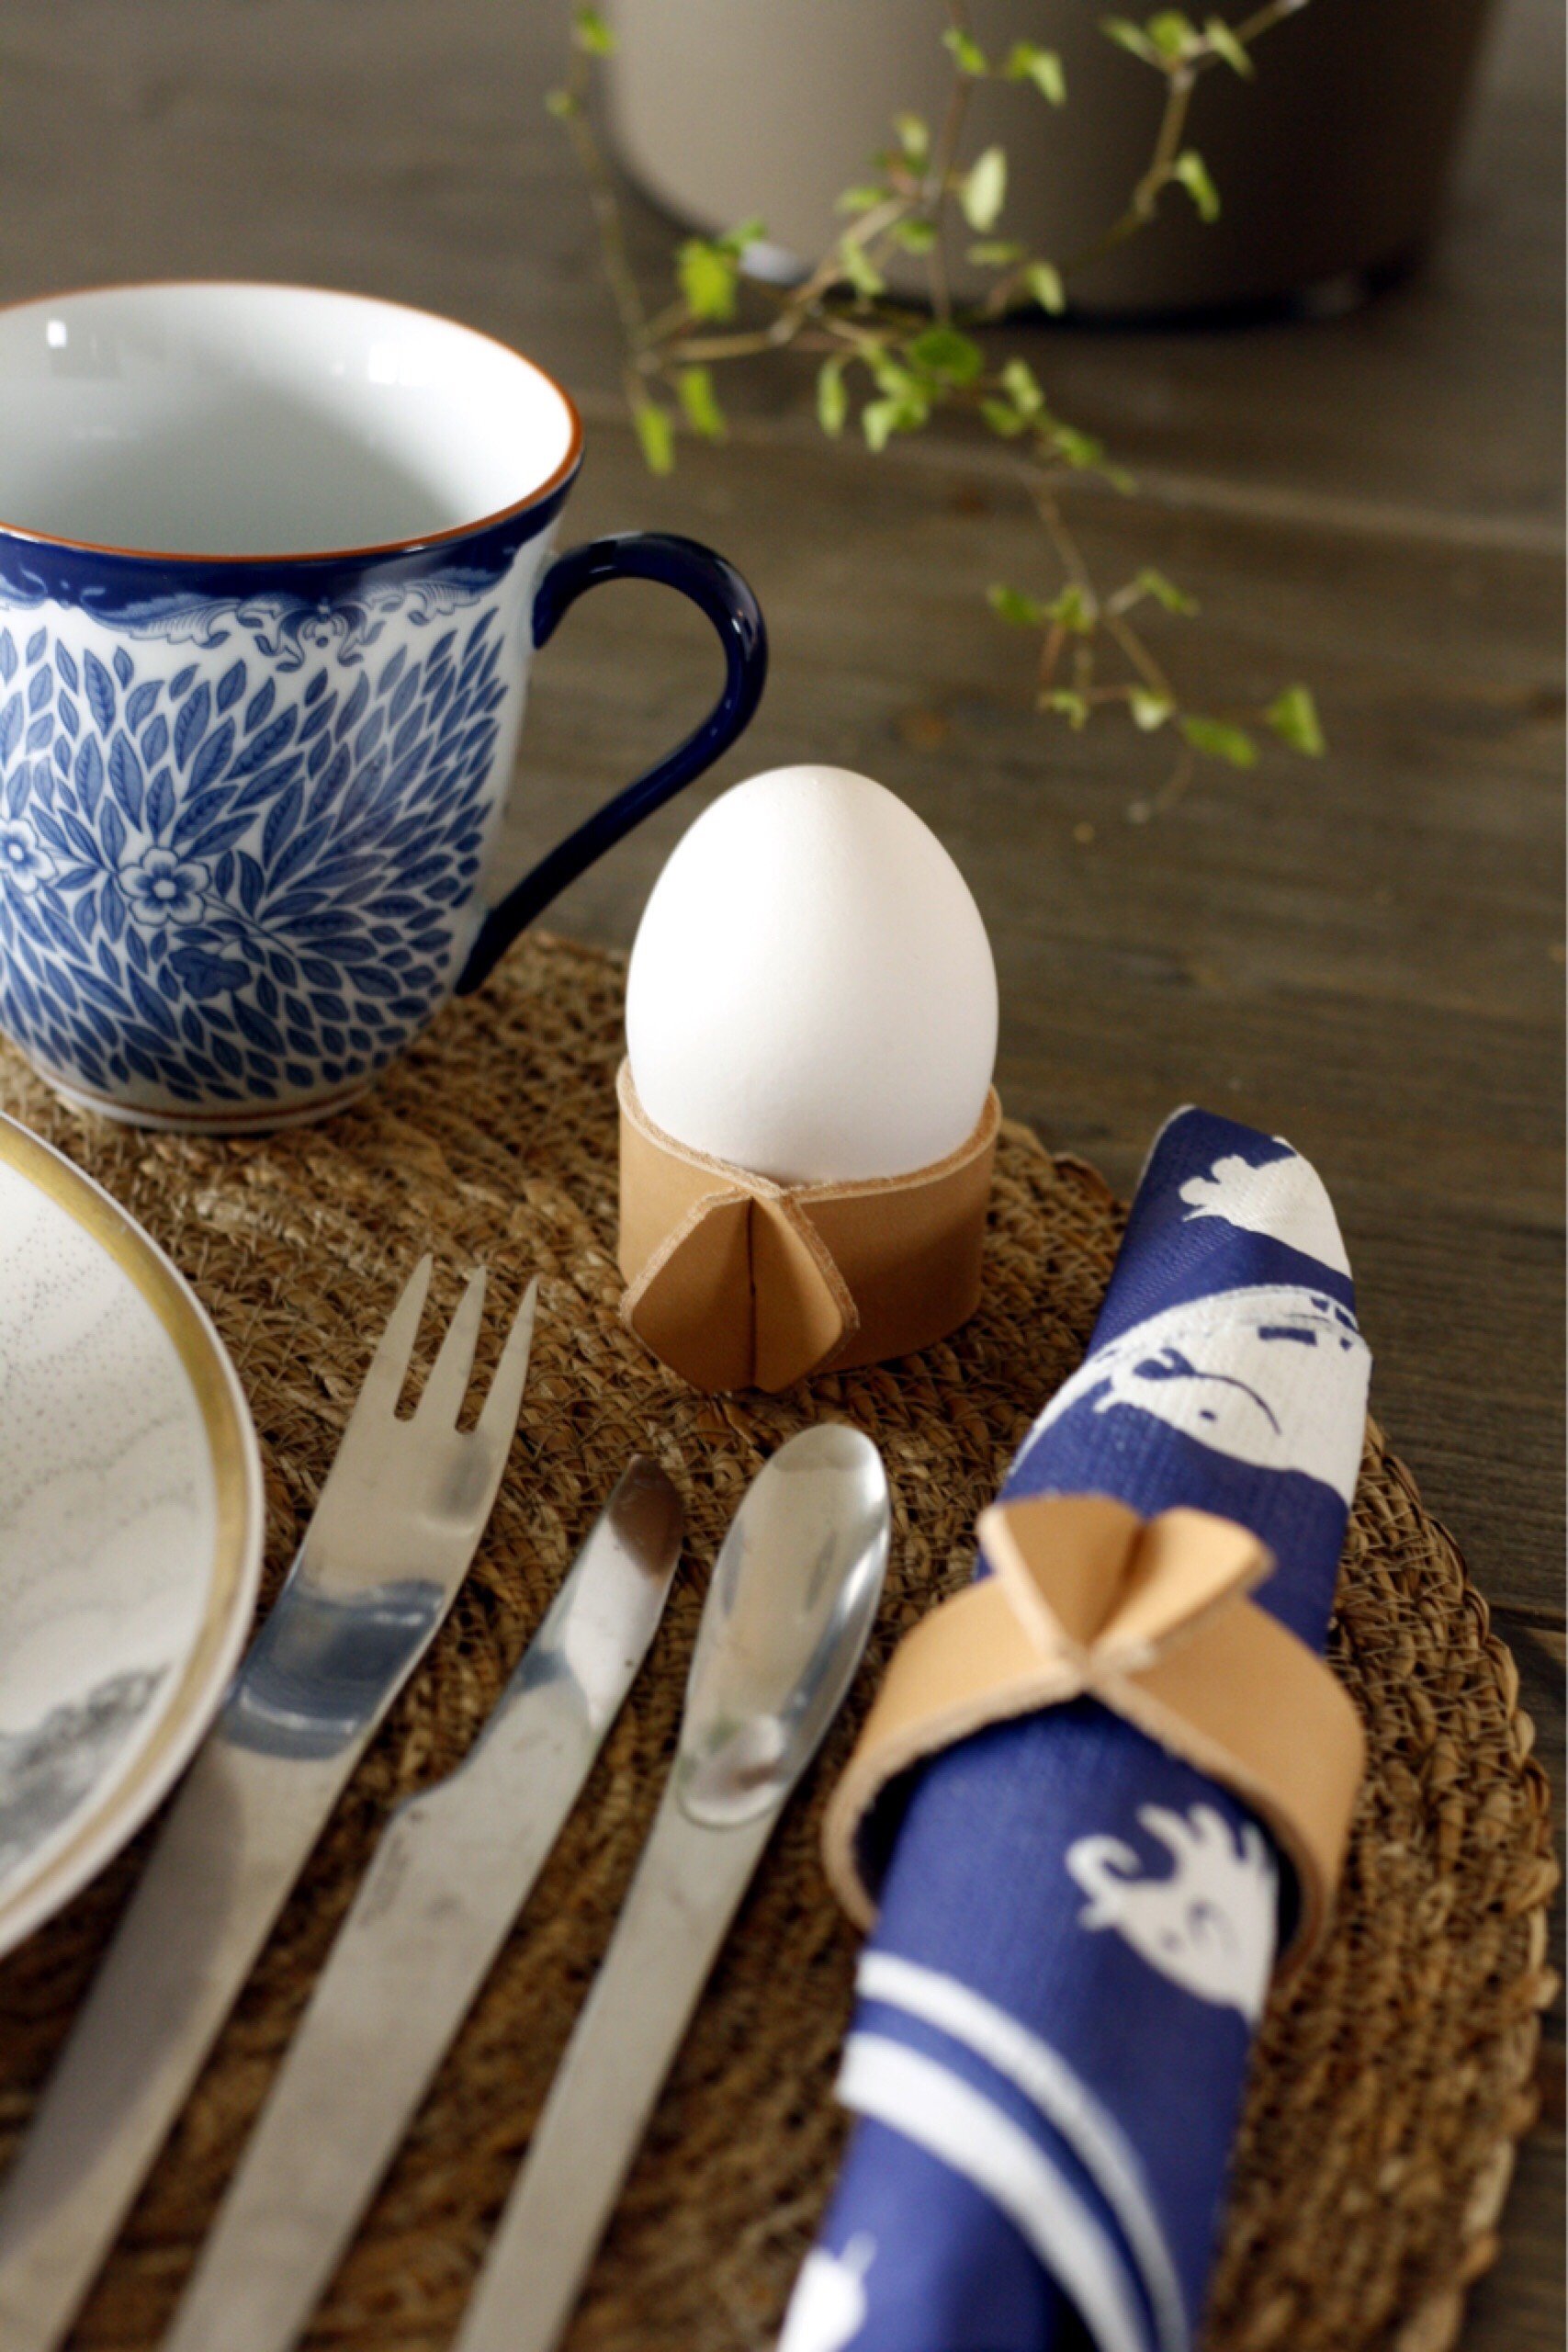 Egg Cup / Napkin Holder - Äggkopp / Servettring i läder